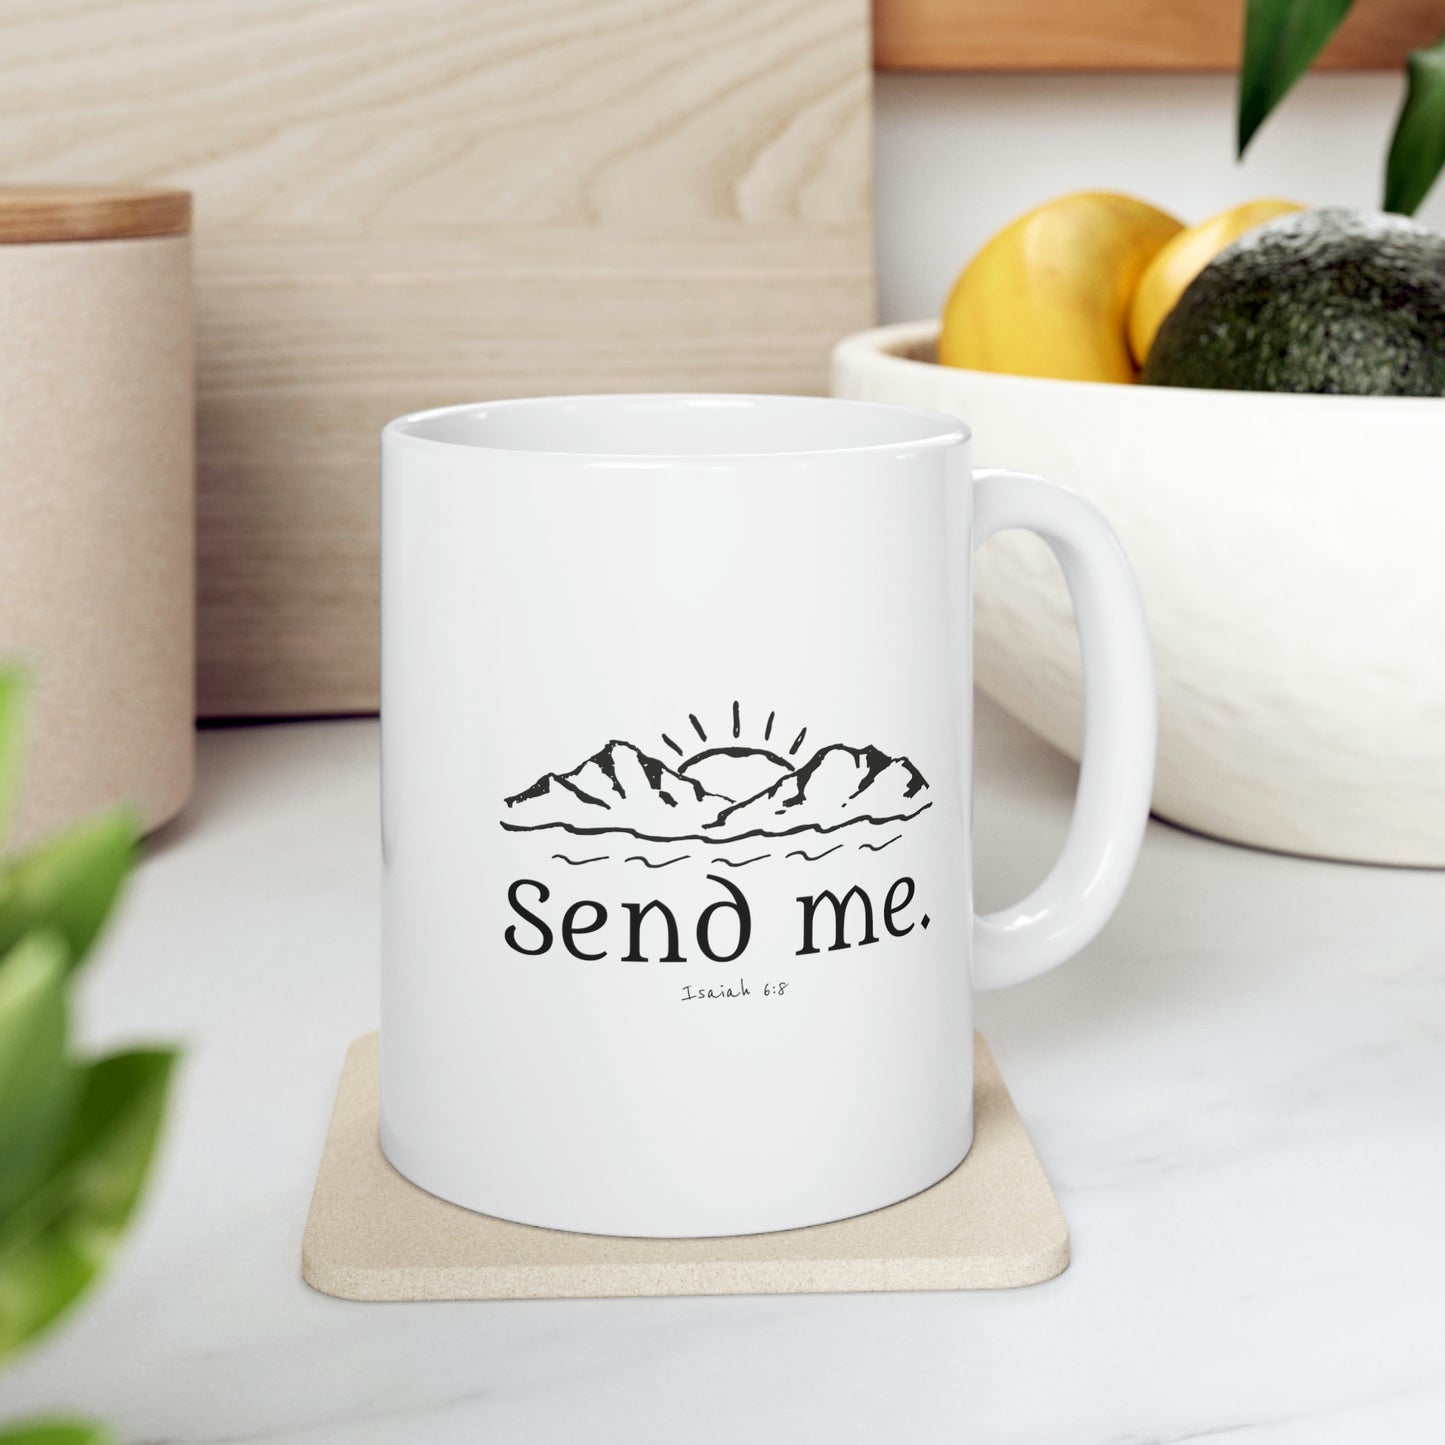 Send Me, Ceramic Mug 11oz, Missionary